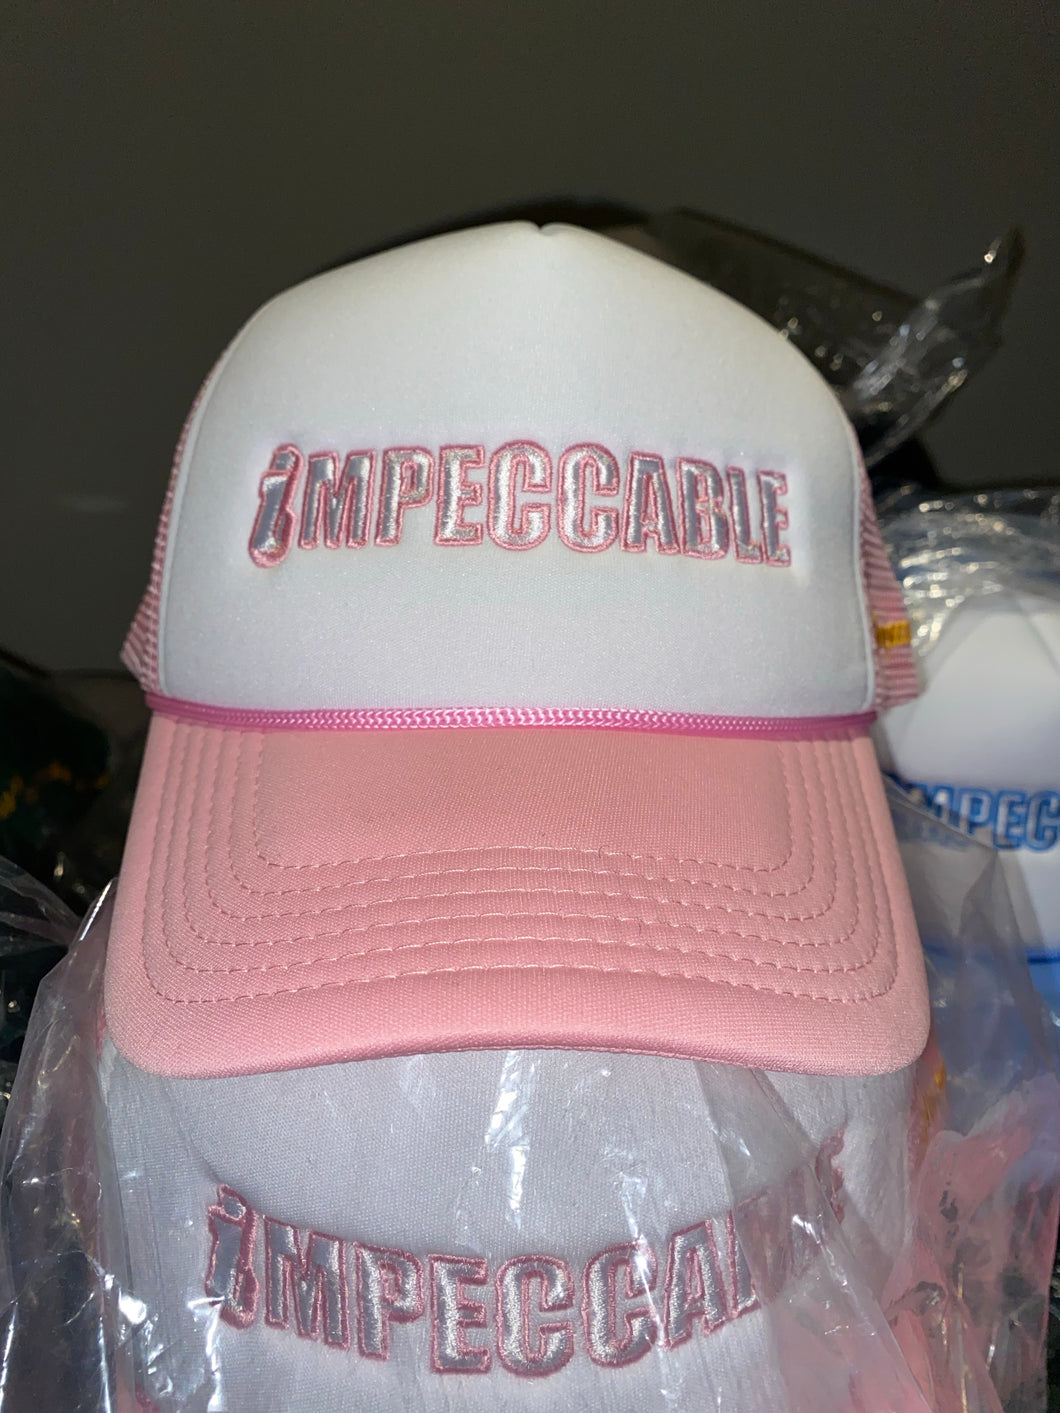 Pink Trucker Hat